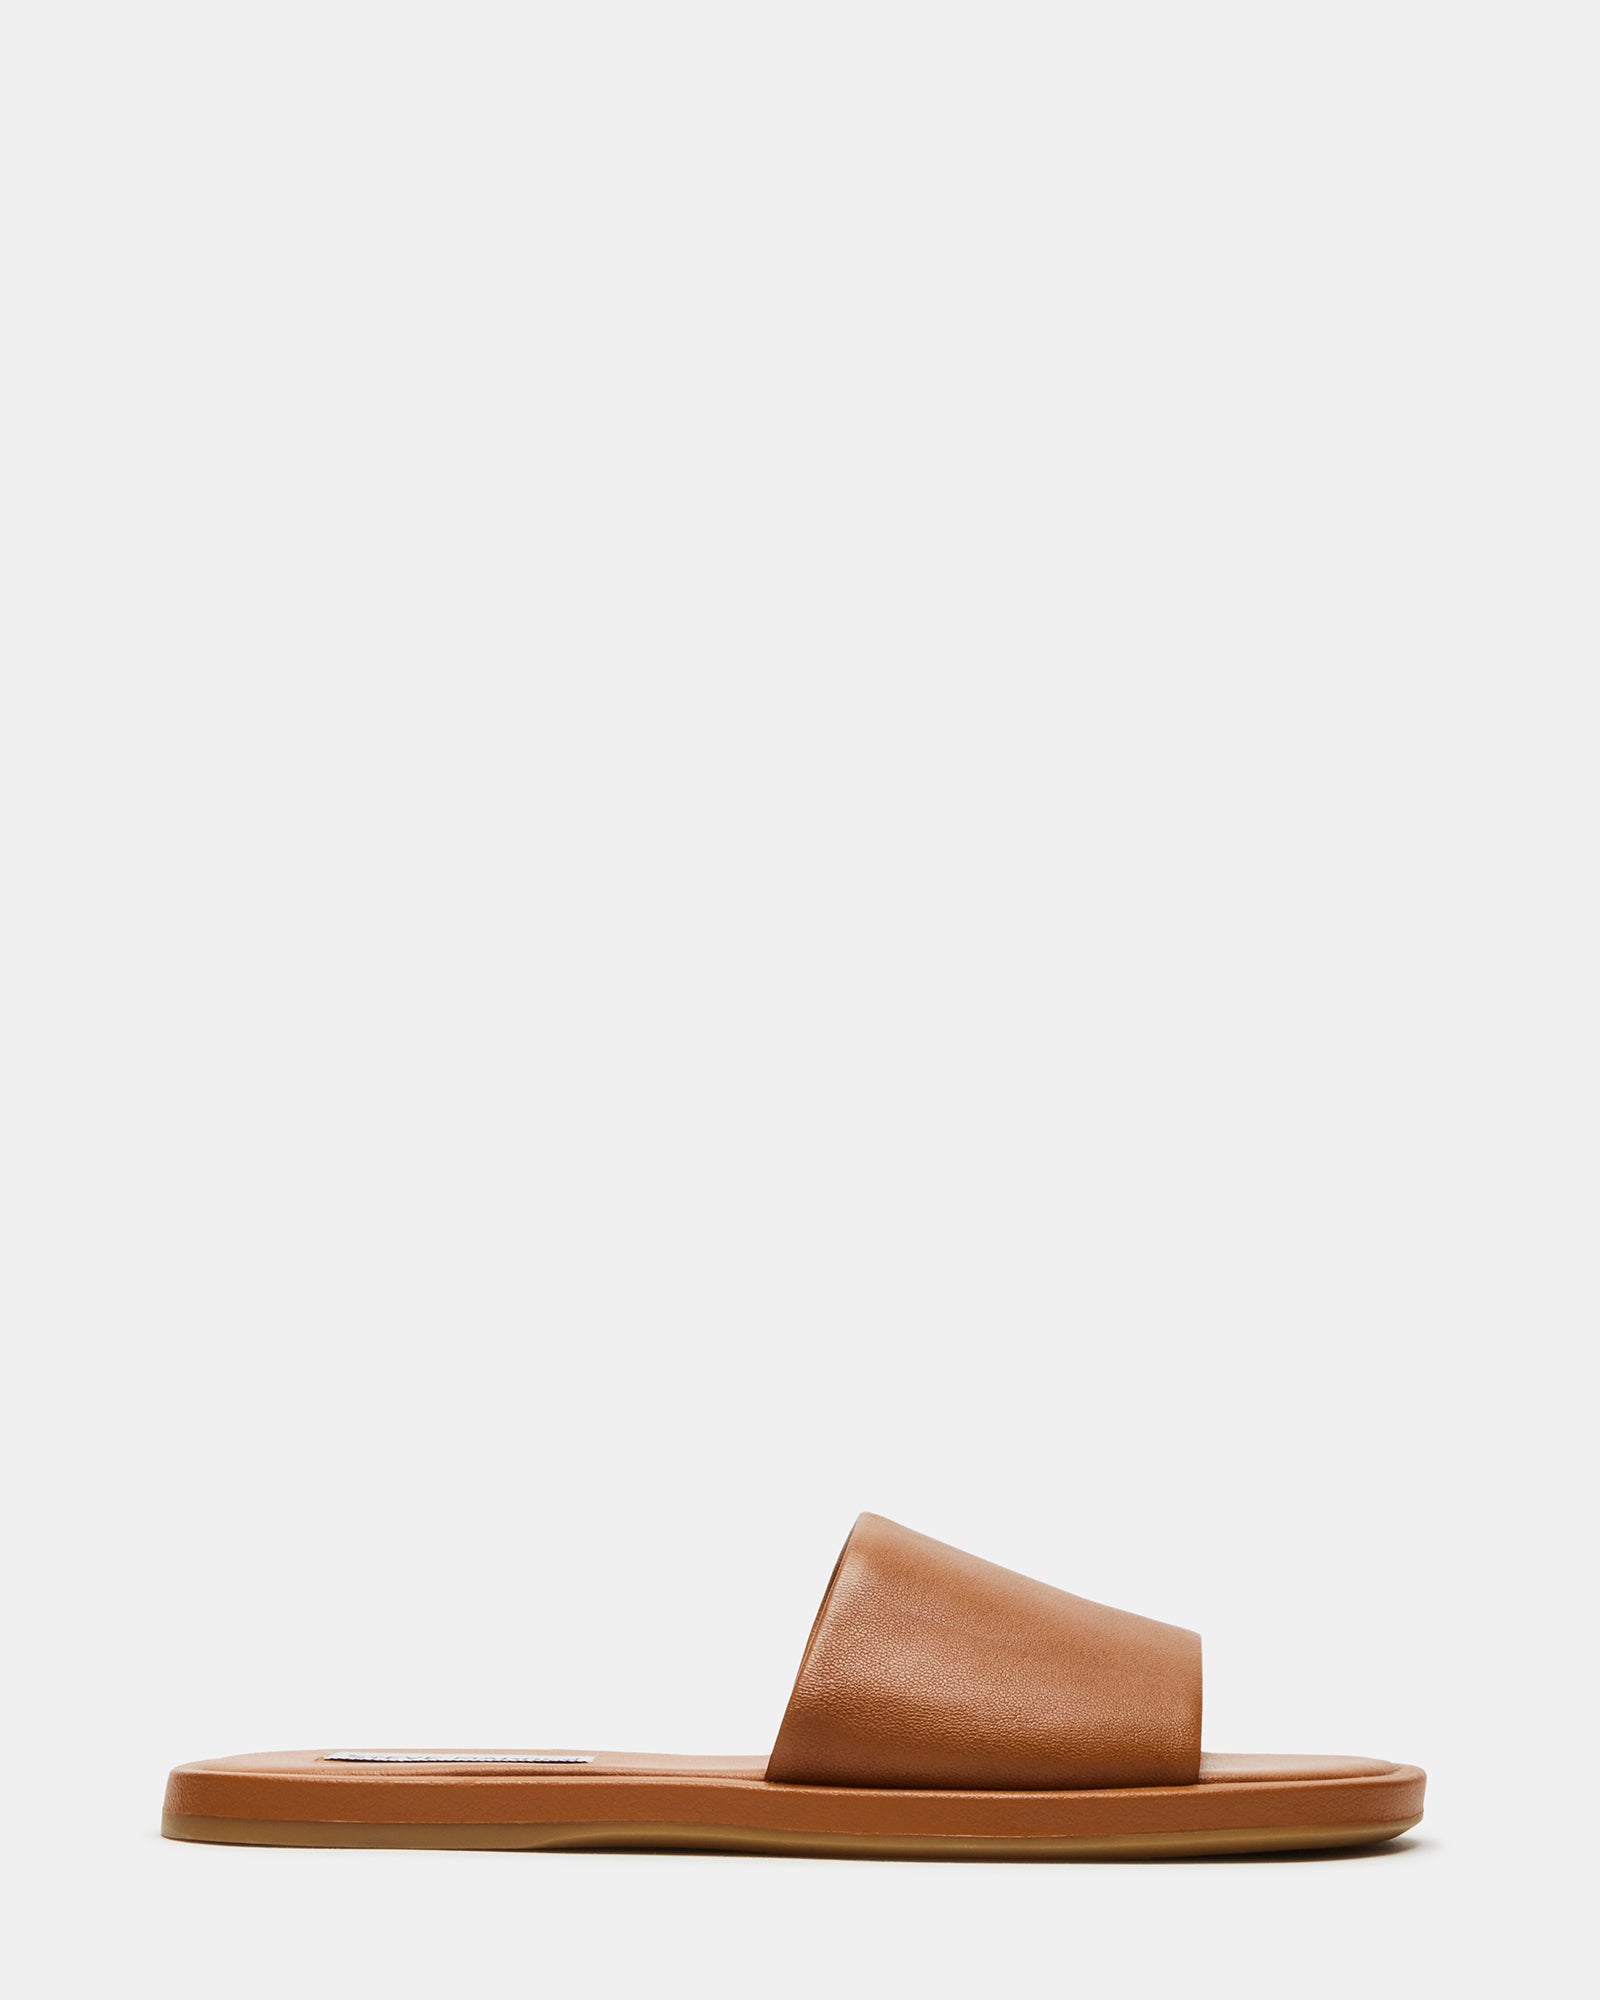 KAYA Brown Leather Slide Sandal | Women's Sandals – Steve Madden